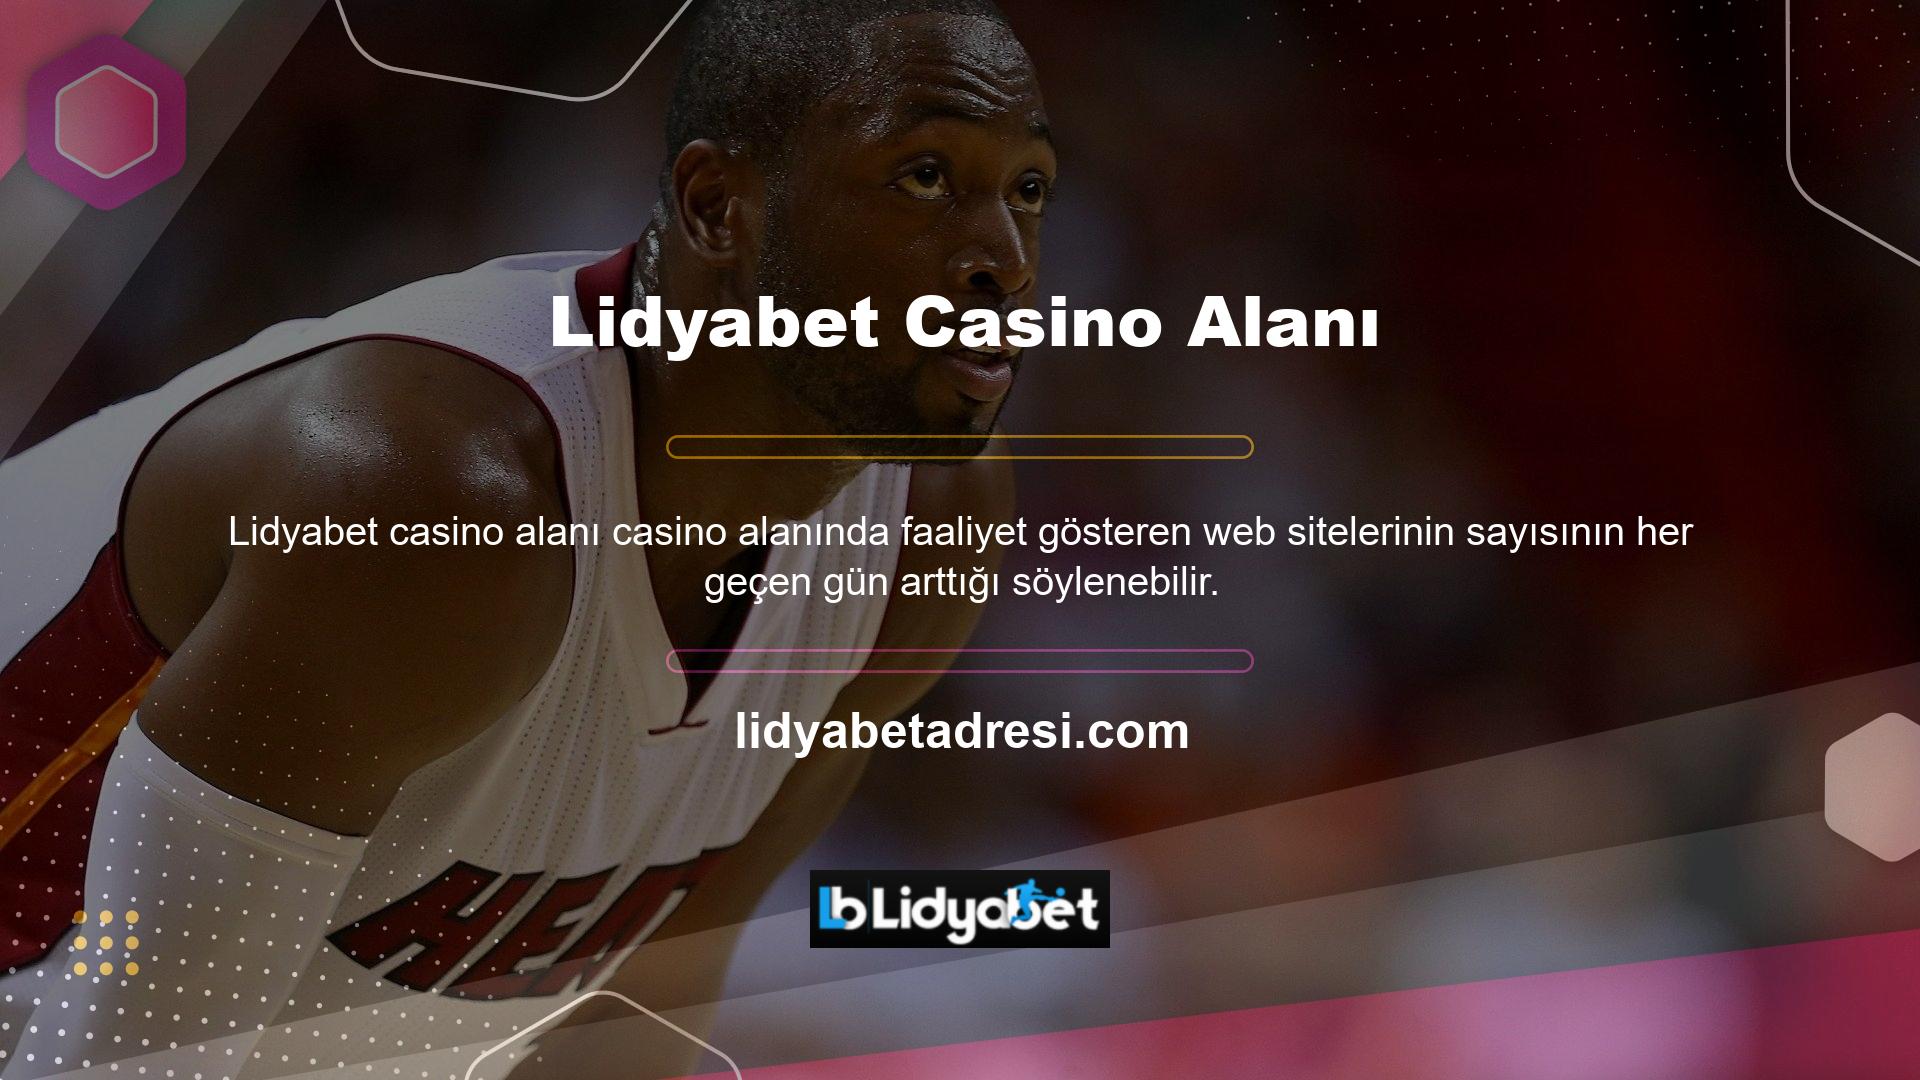 Lidyabet web sitesinin 7/24 canlı destek hattı, bahis tutkunlarının sitedeki bilgilere anında ulaşabilecekleri iletişim kanallarından biridir